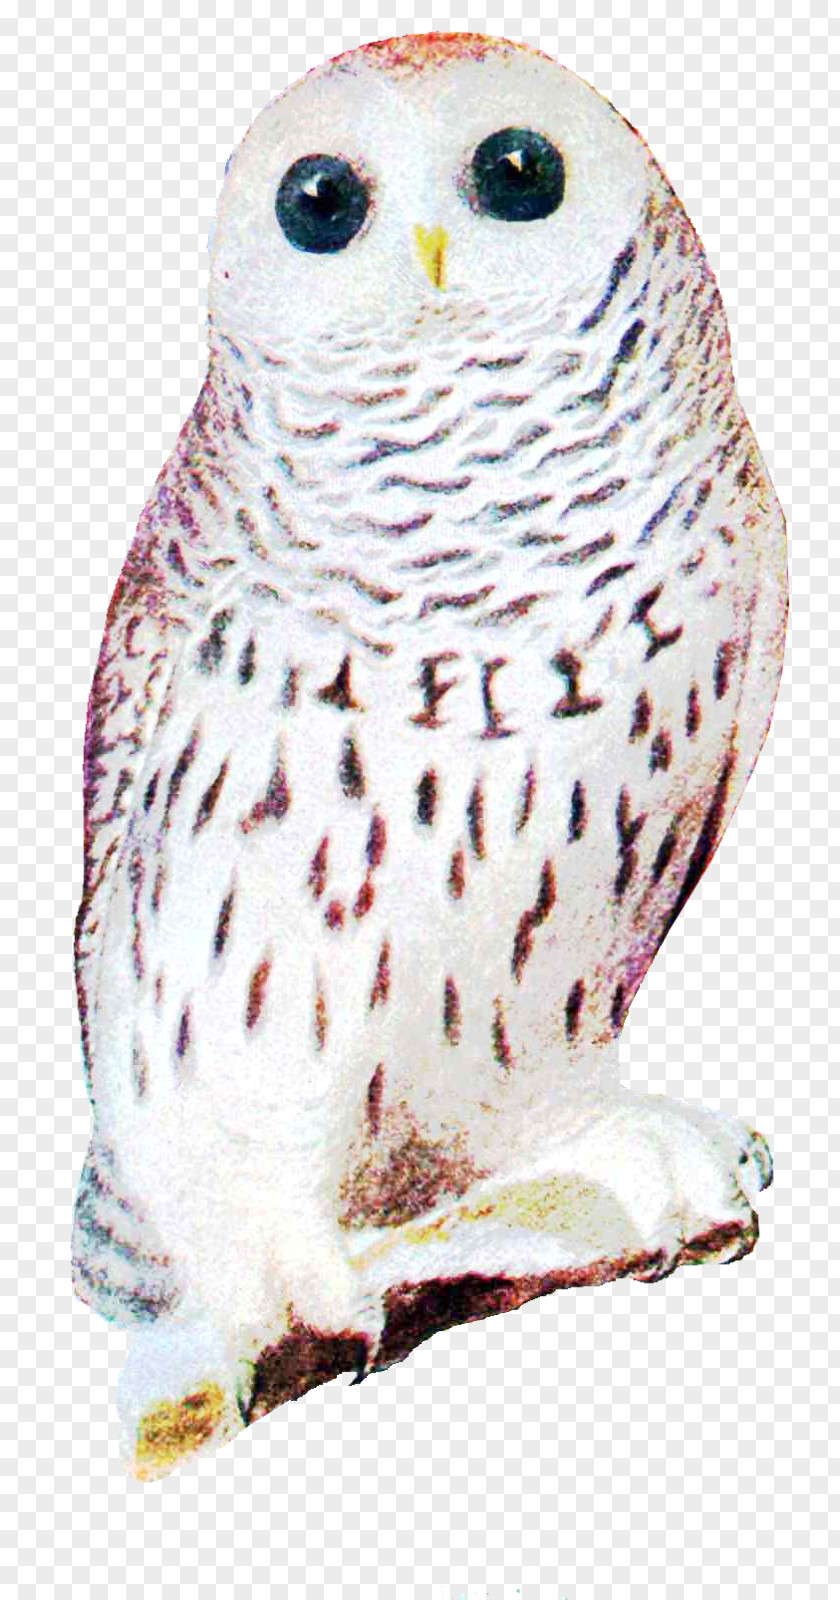 Owl Great Grey Snowy Beak Zazzle PNG